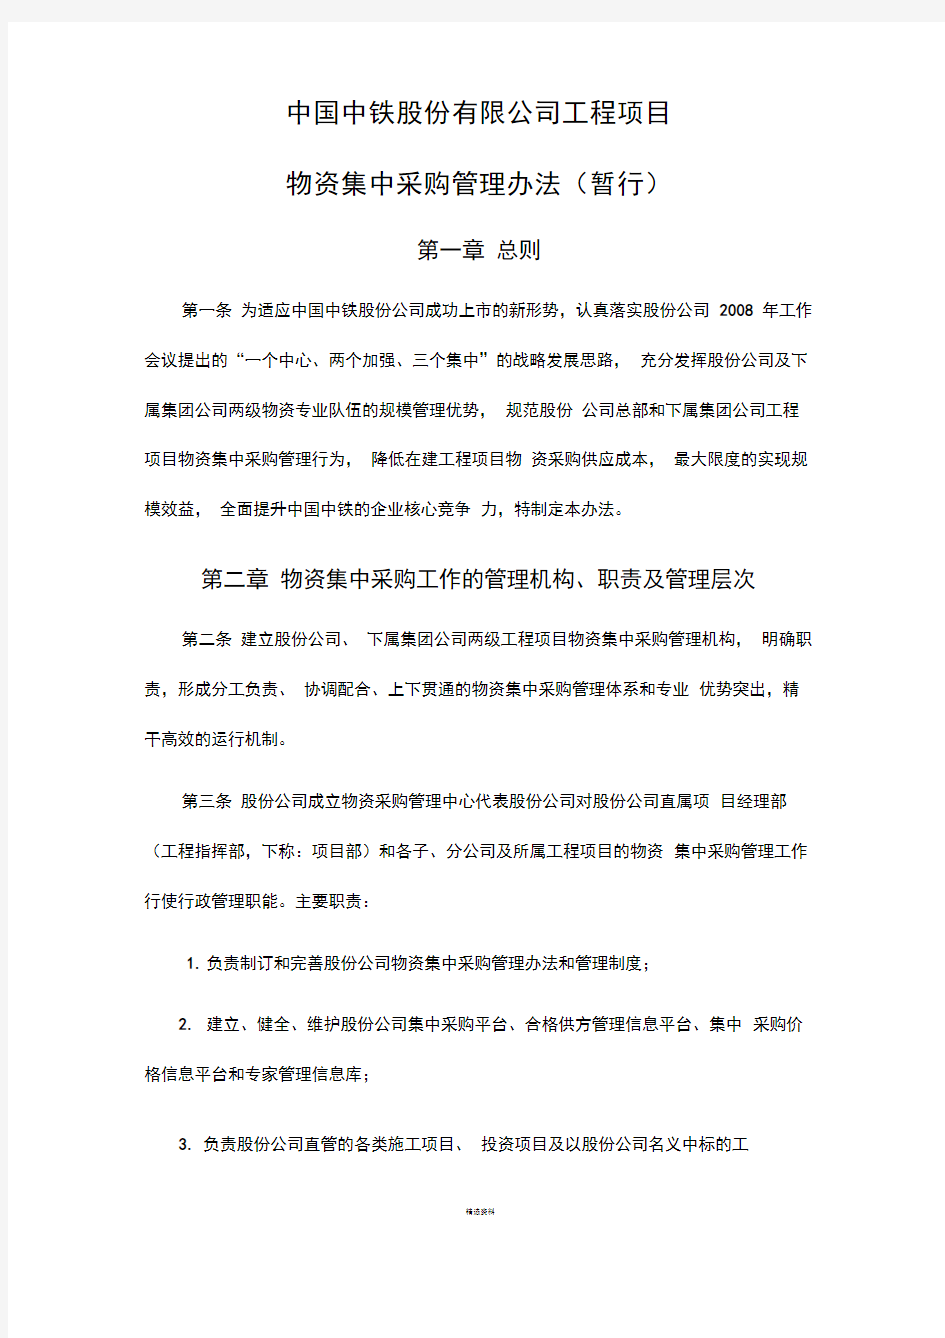 中国中铁股份有限公司工程项目物资集中采购管理办法(暂行)